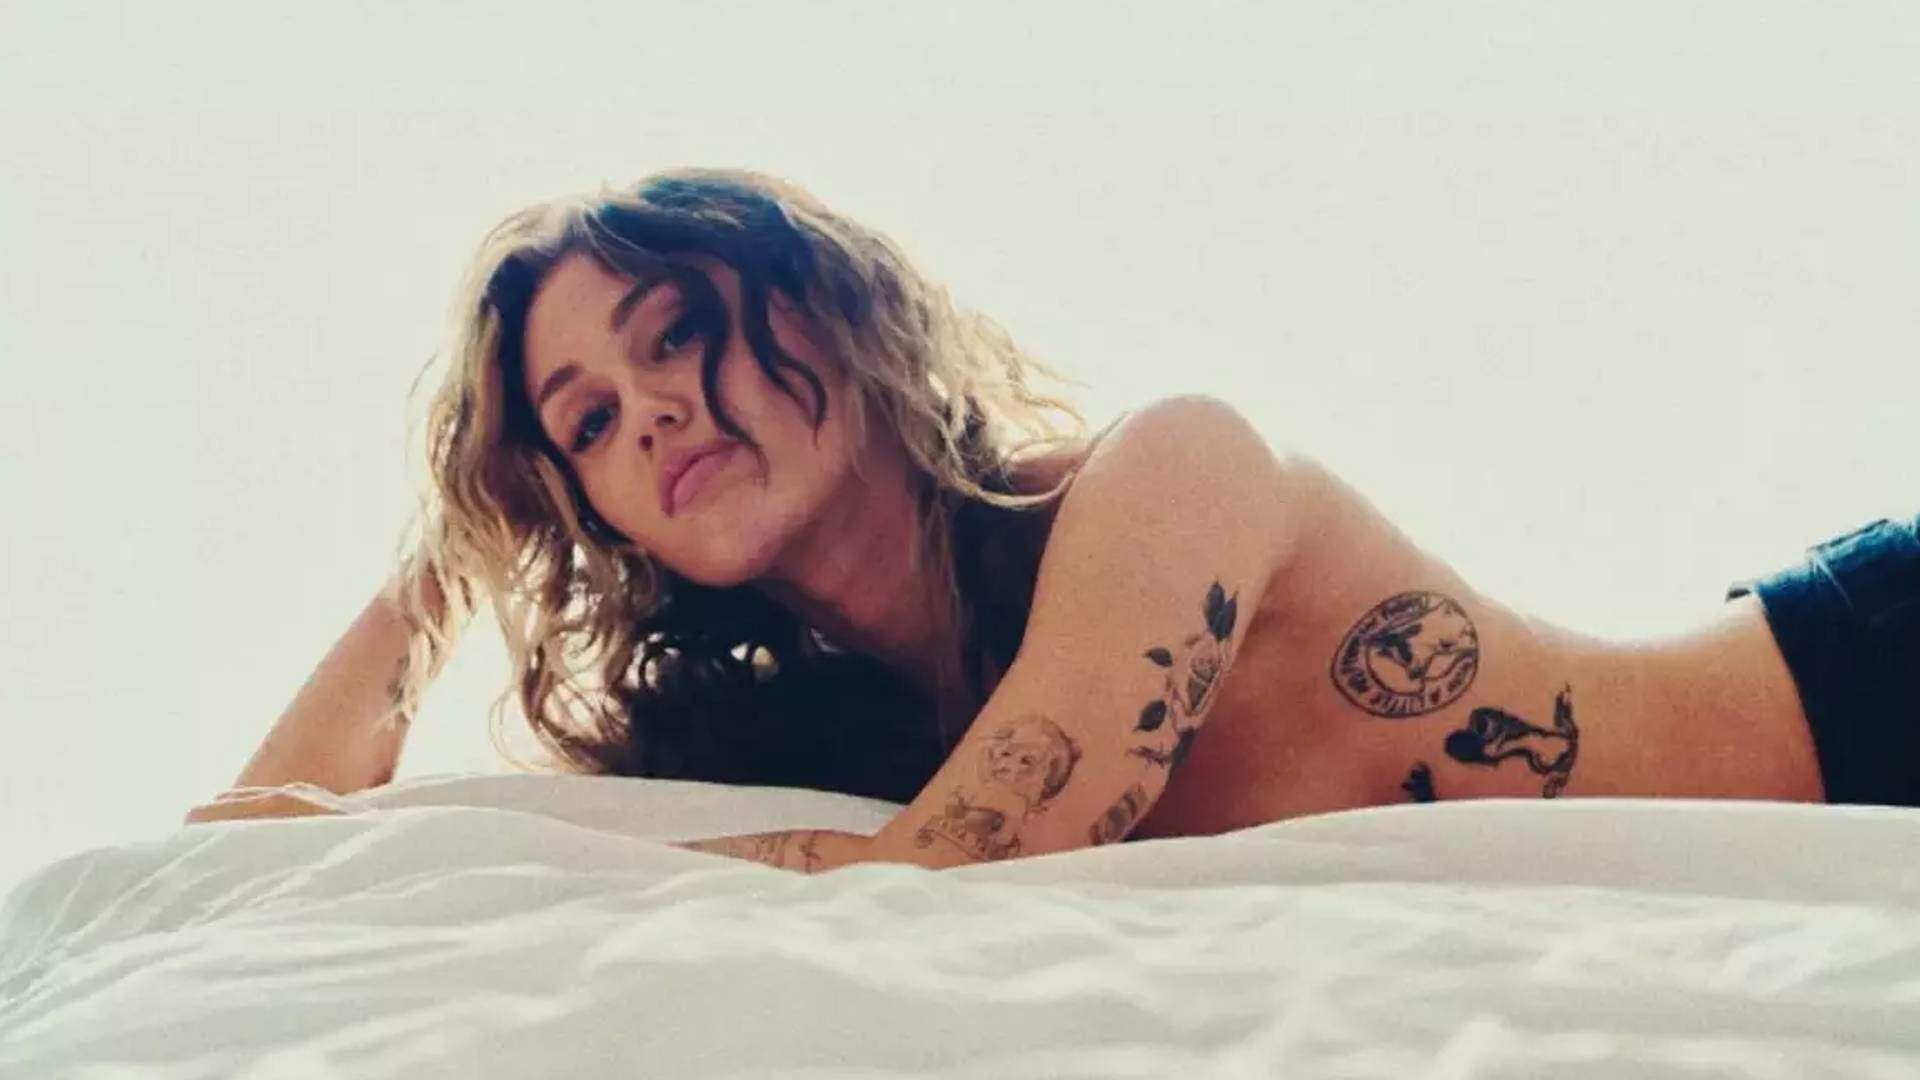 Não gostaram? Fãs ficam desapontados e reprovam novo clipe de Miley Cyrus: “Não pode ser real”